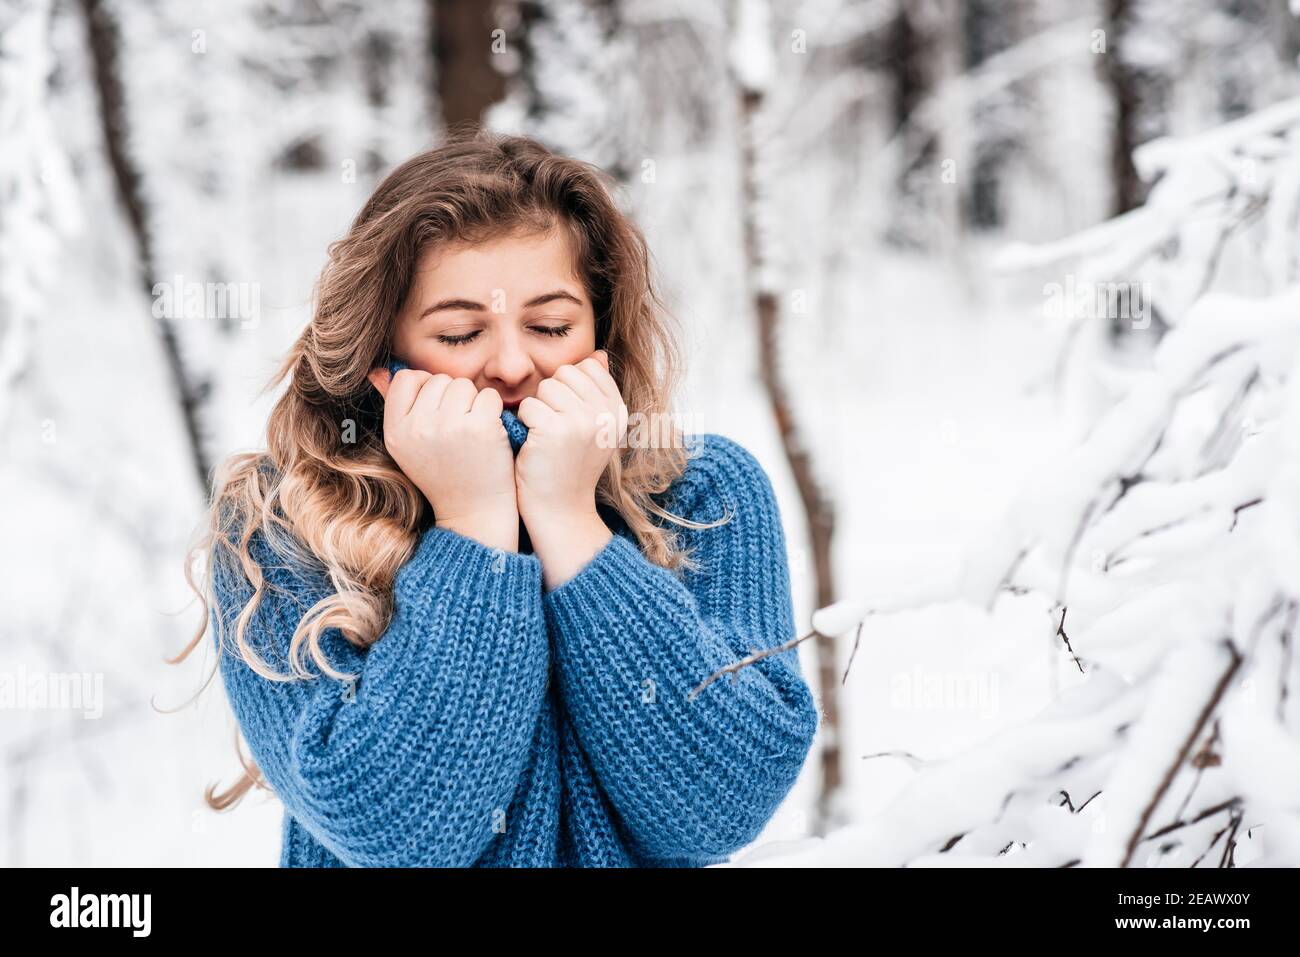 bella ragazza d'inverno in un pullover in maglia blu accogliente che gioca con neve Foto Stock